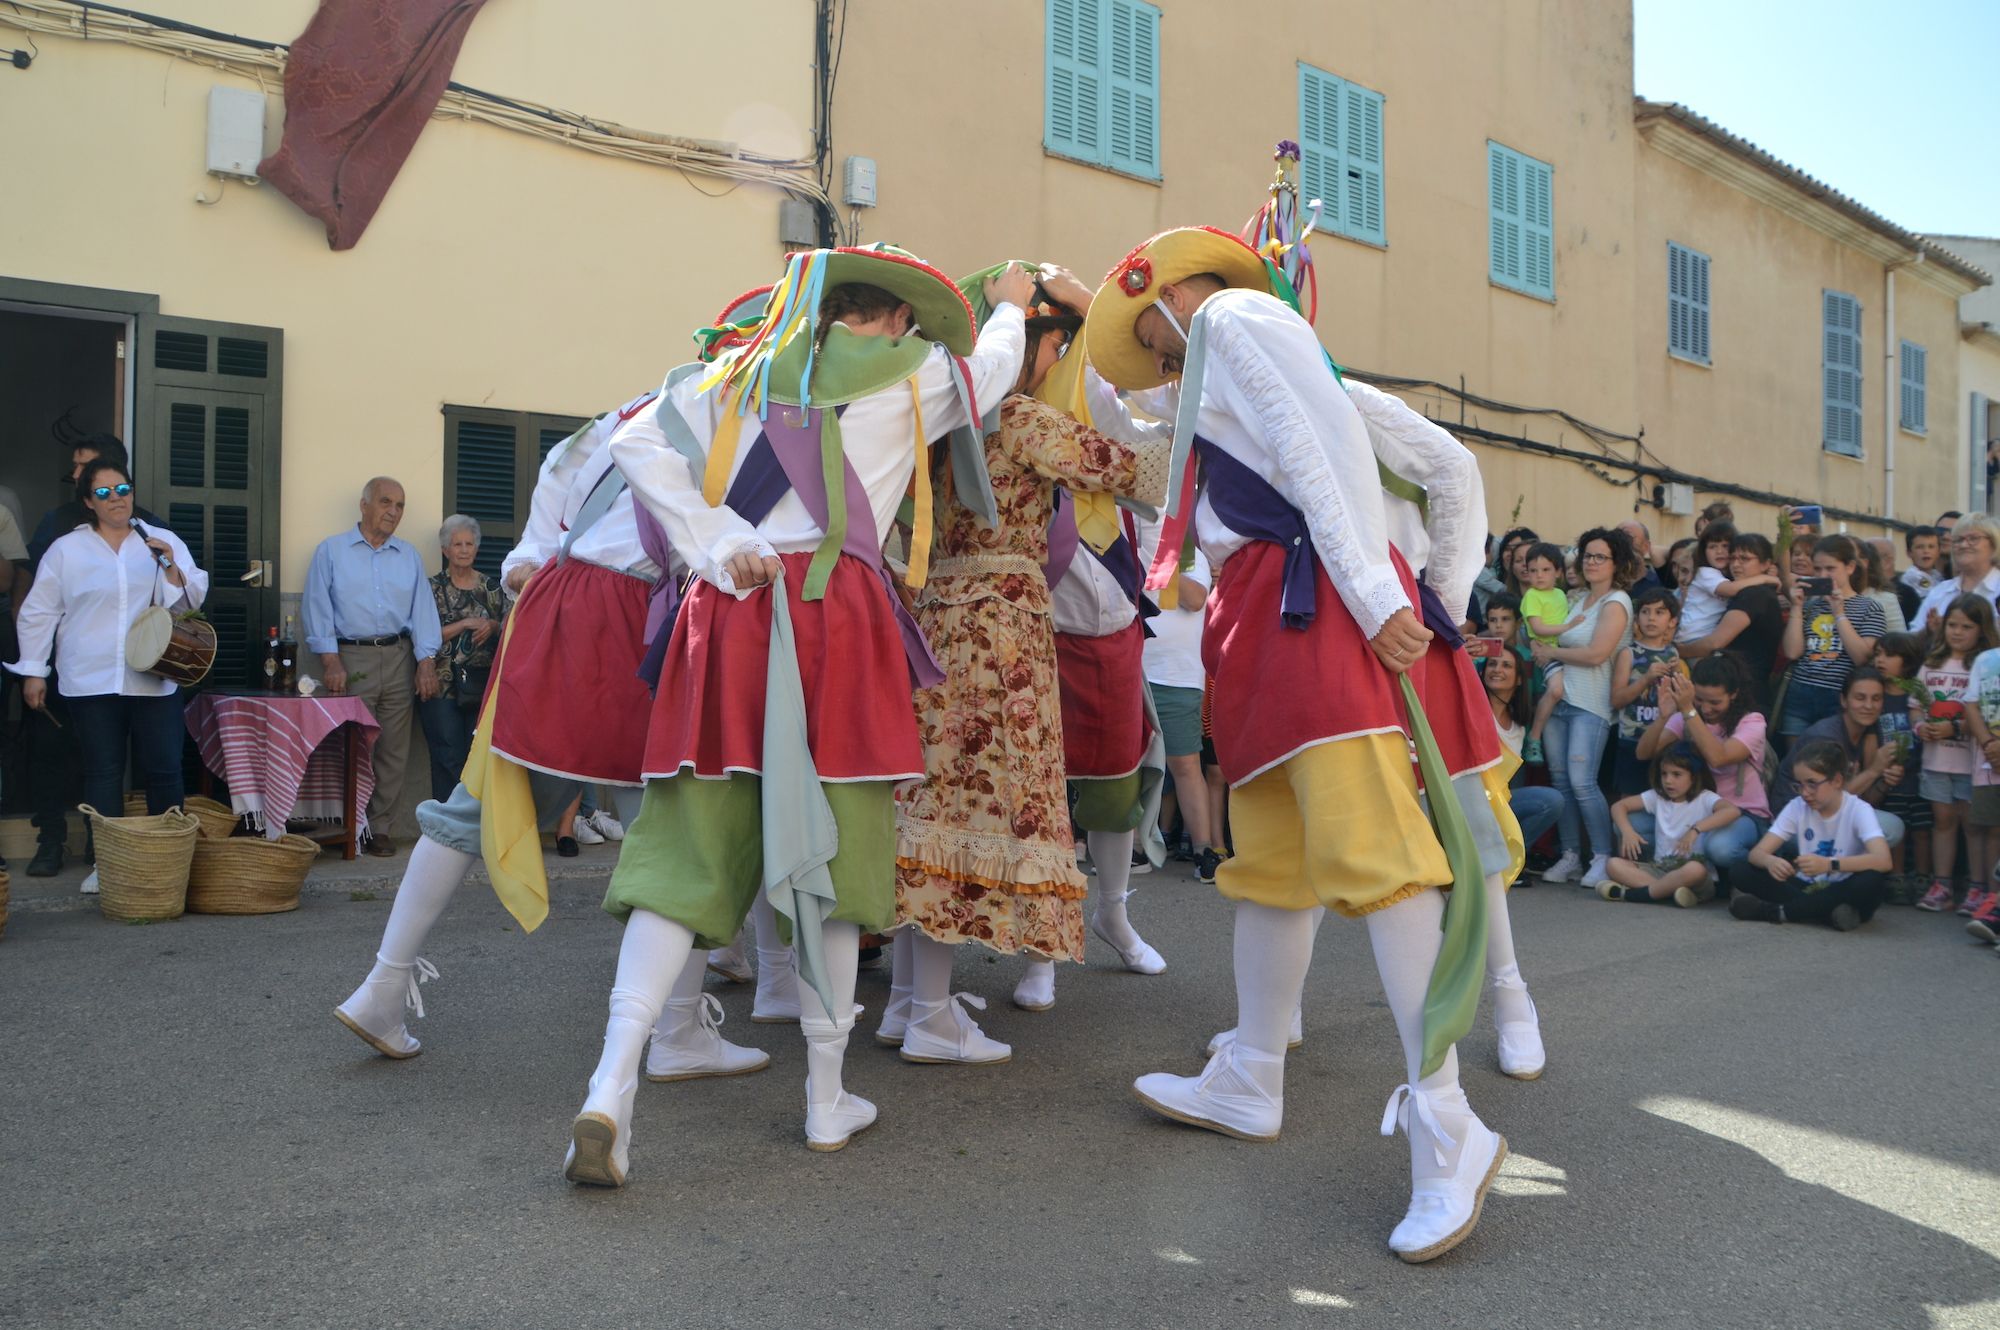 Las danzas ancestrales de los Cossiers de Manacor inician las Fires i Festes de este año